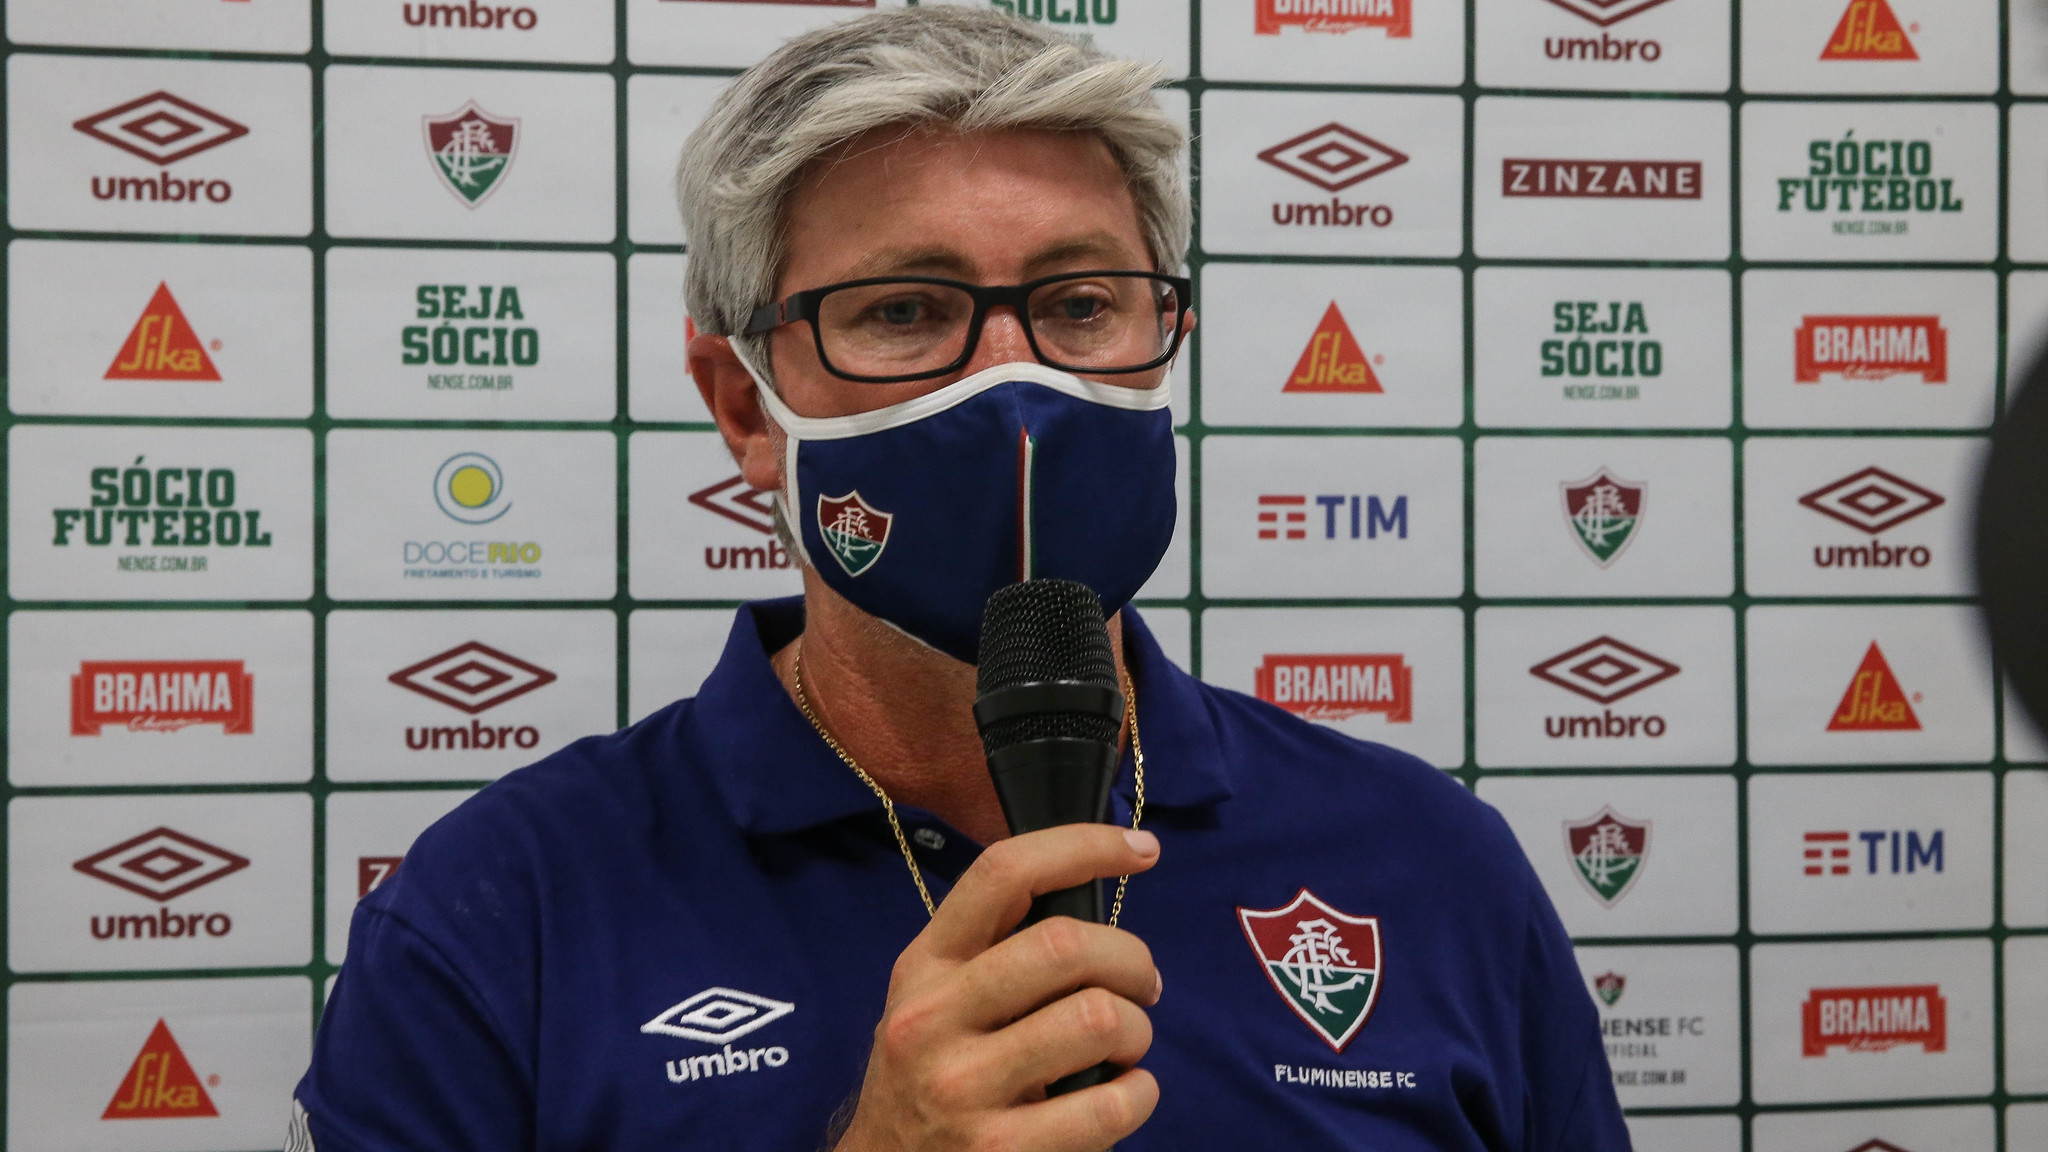 Odair-Hellmann-Atlético-GO-Lucas-Merçon-Fluminense